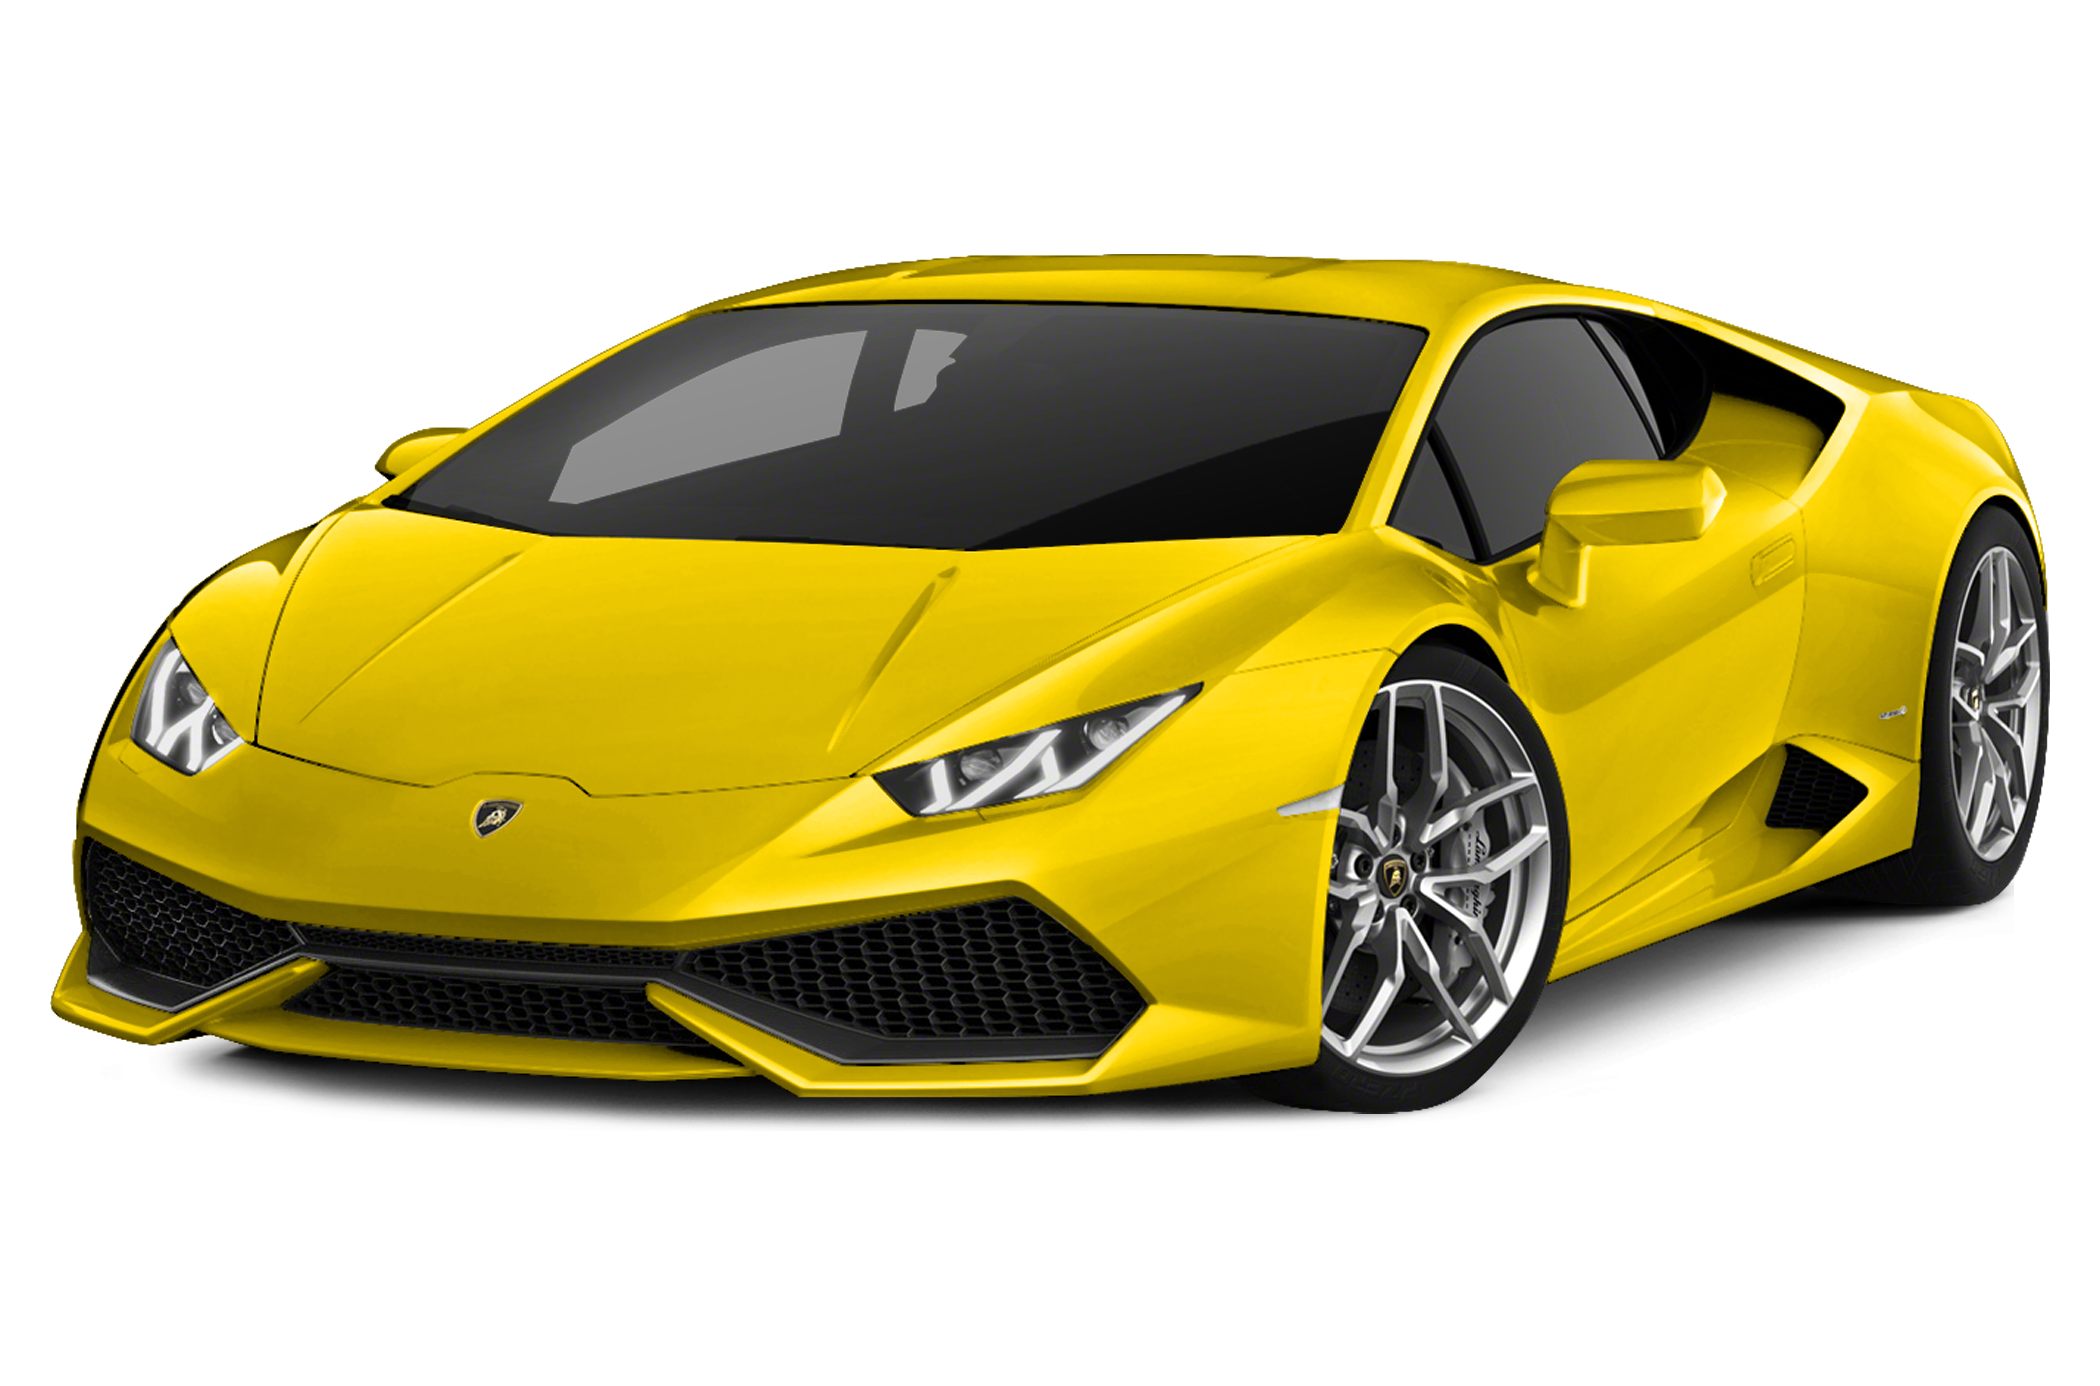 Lamborghini Huracan Backgrounds, Compatible - PC, Mobile, Gadgets| 2100x1386 px